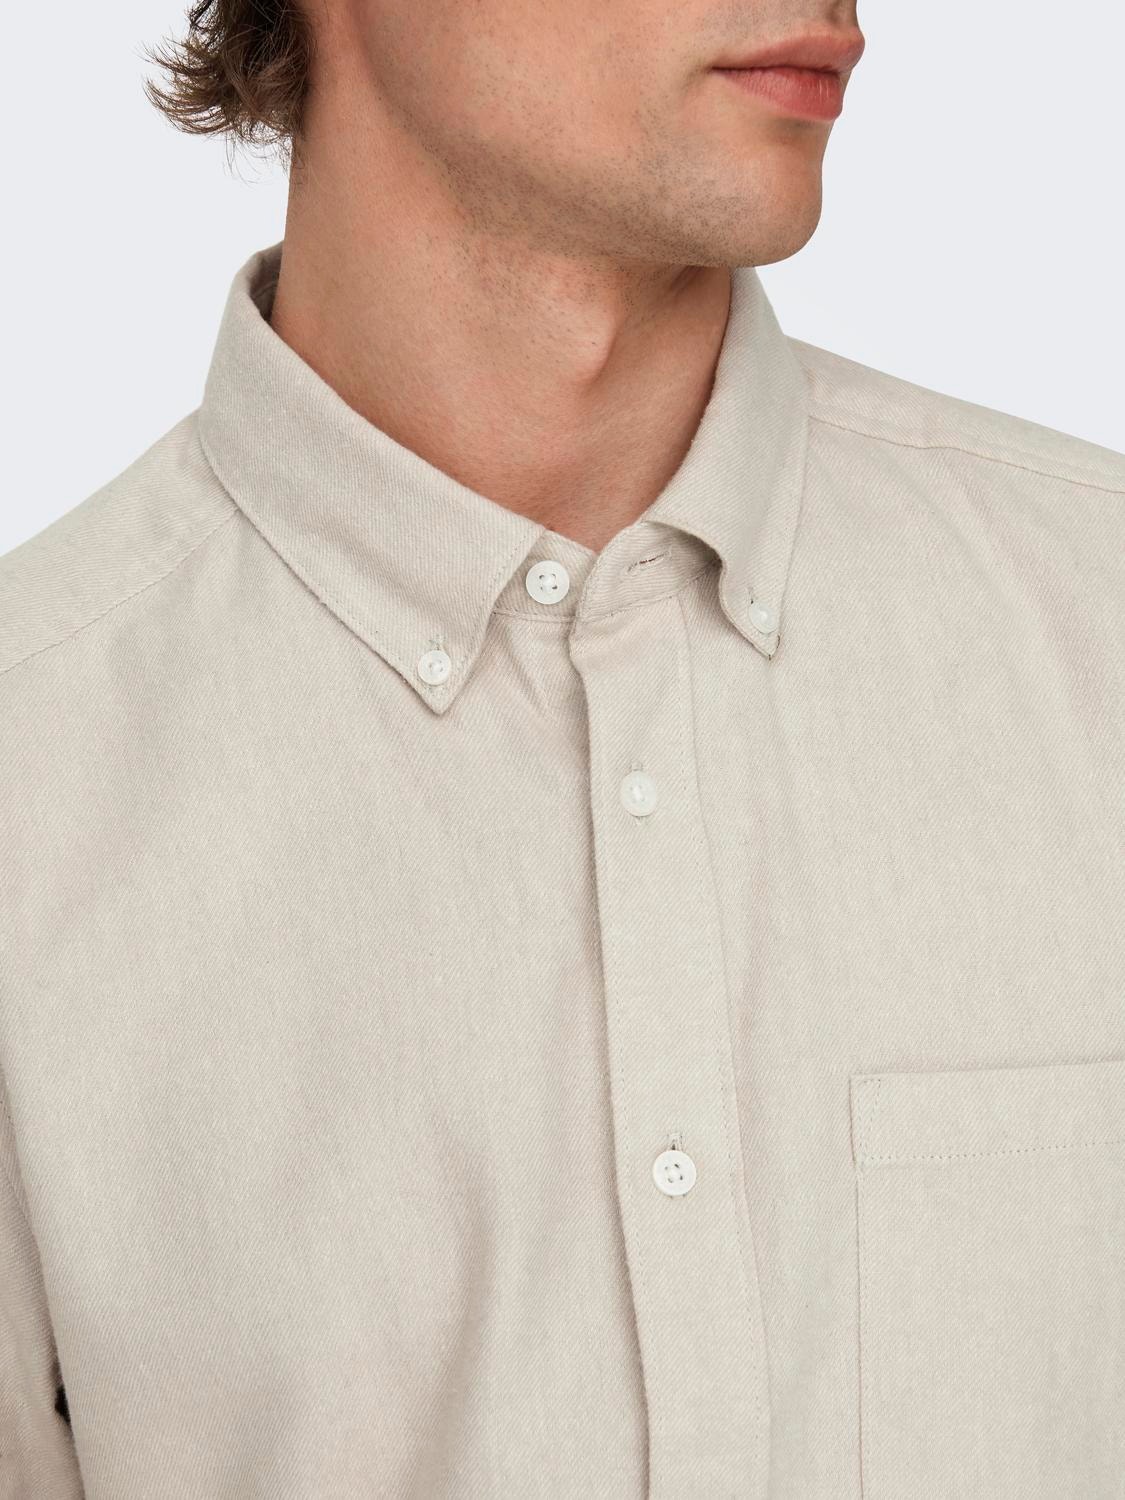 ONLY & SONS Camisas Corte slim Cuello de camisa -Silver Lining - 22027307